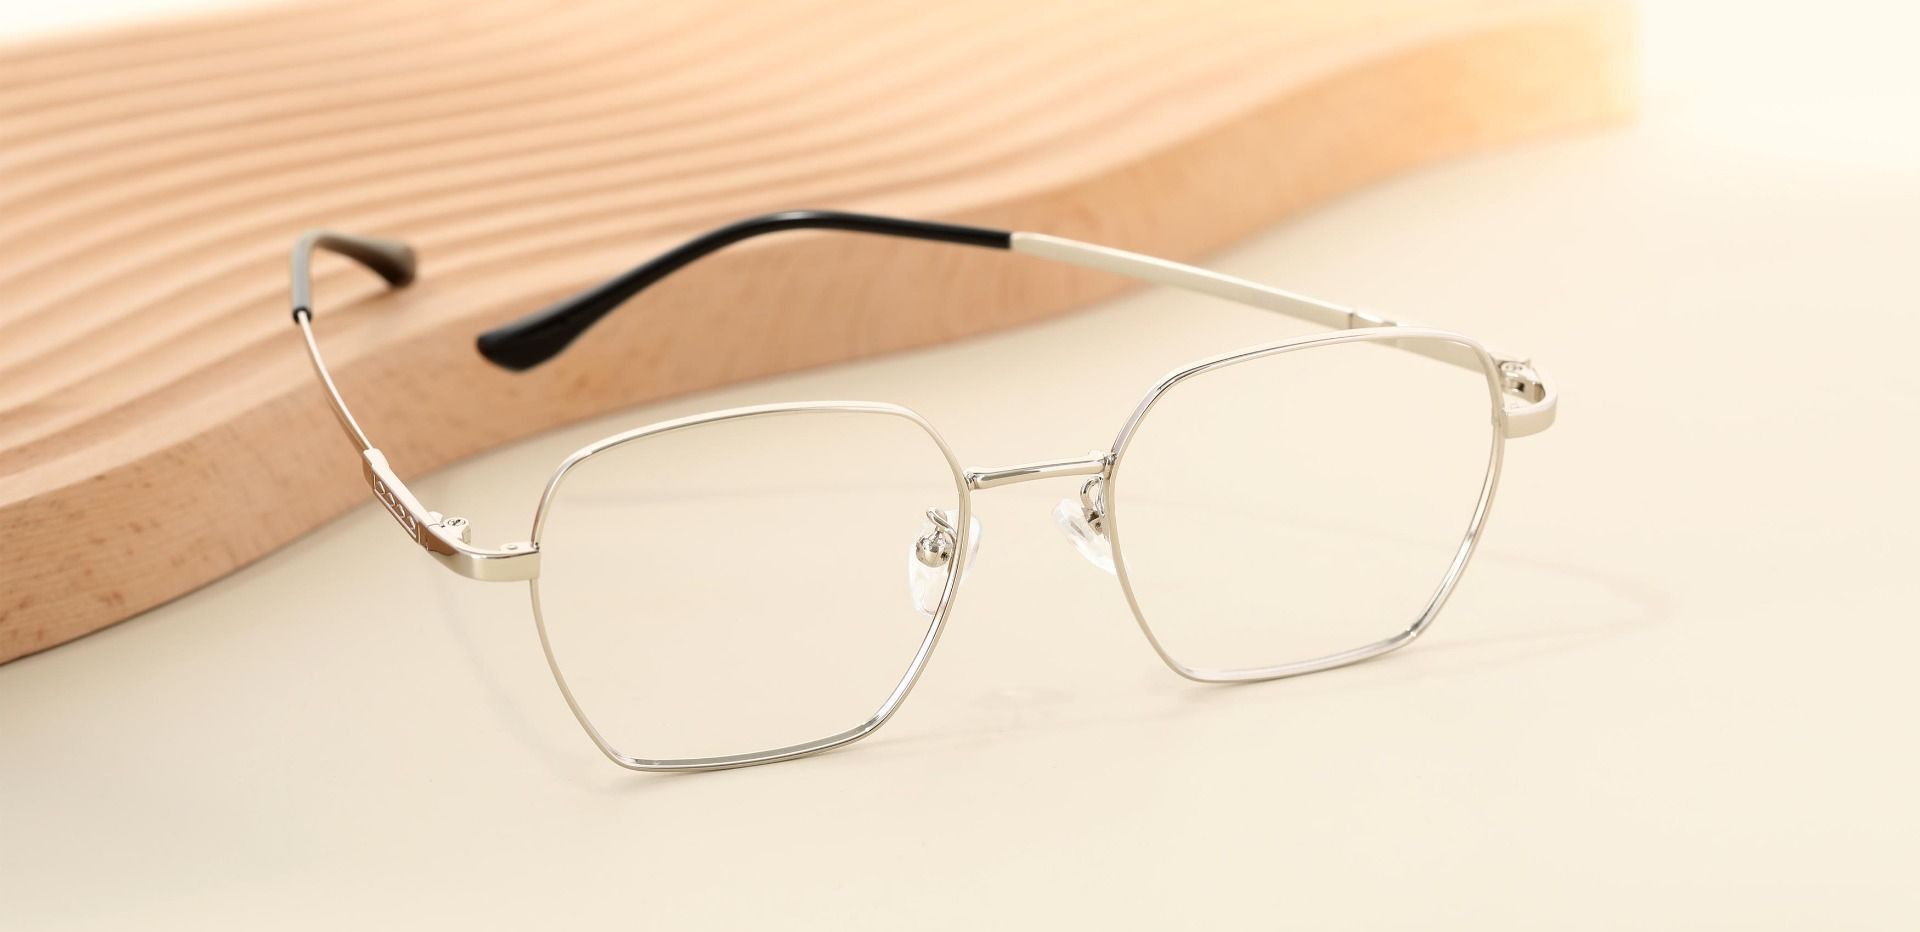 Dawson Geometric Prescription Glasses - Silver